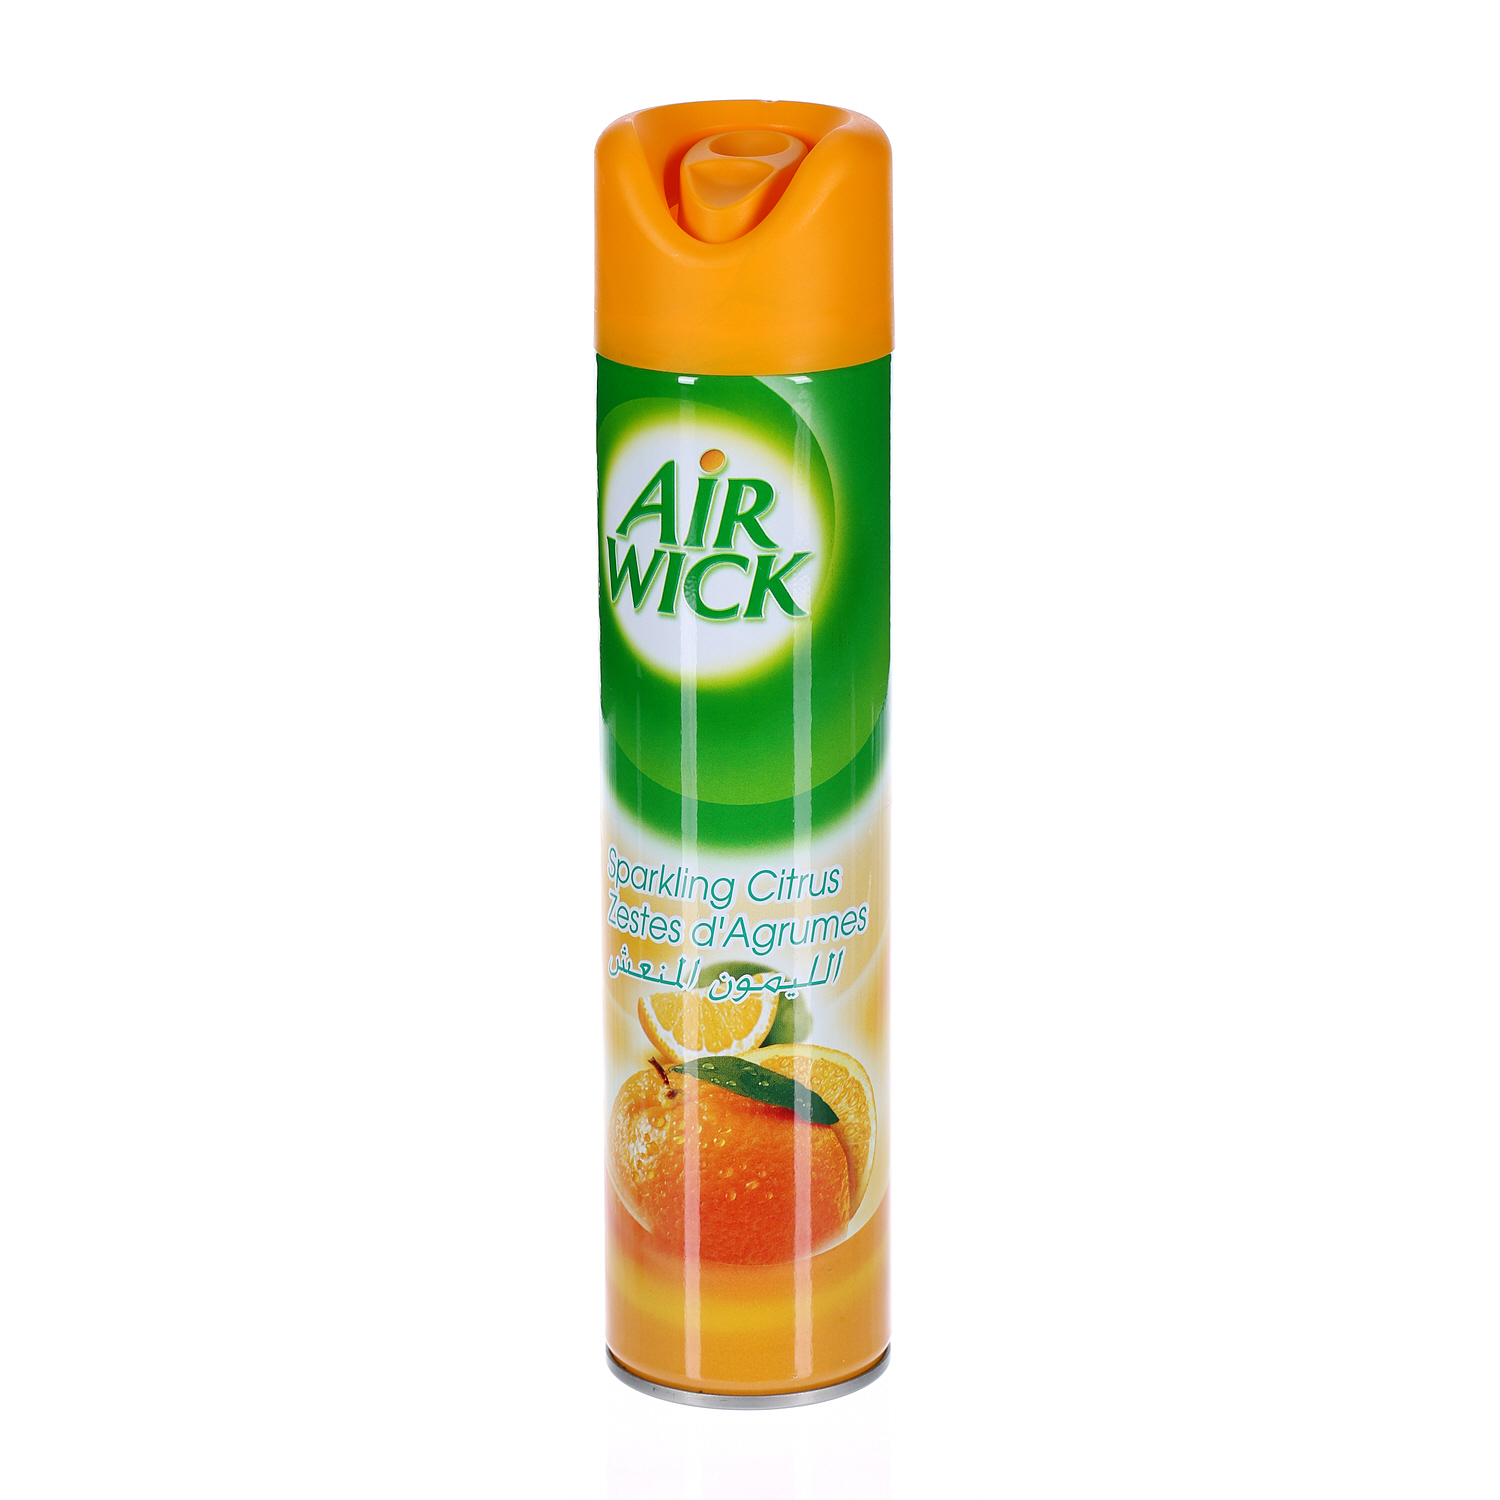 Air Wick Aerosol Sparkling Citrus 300 ml